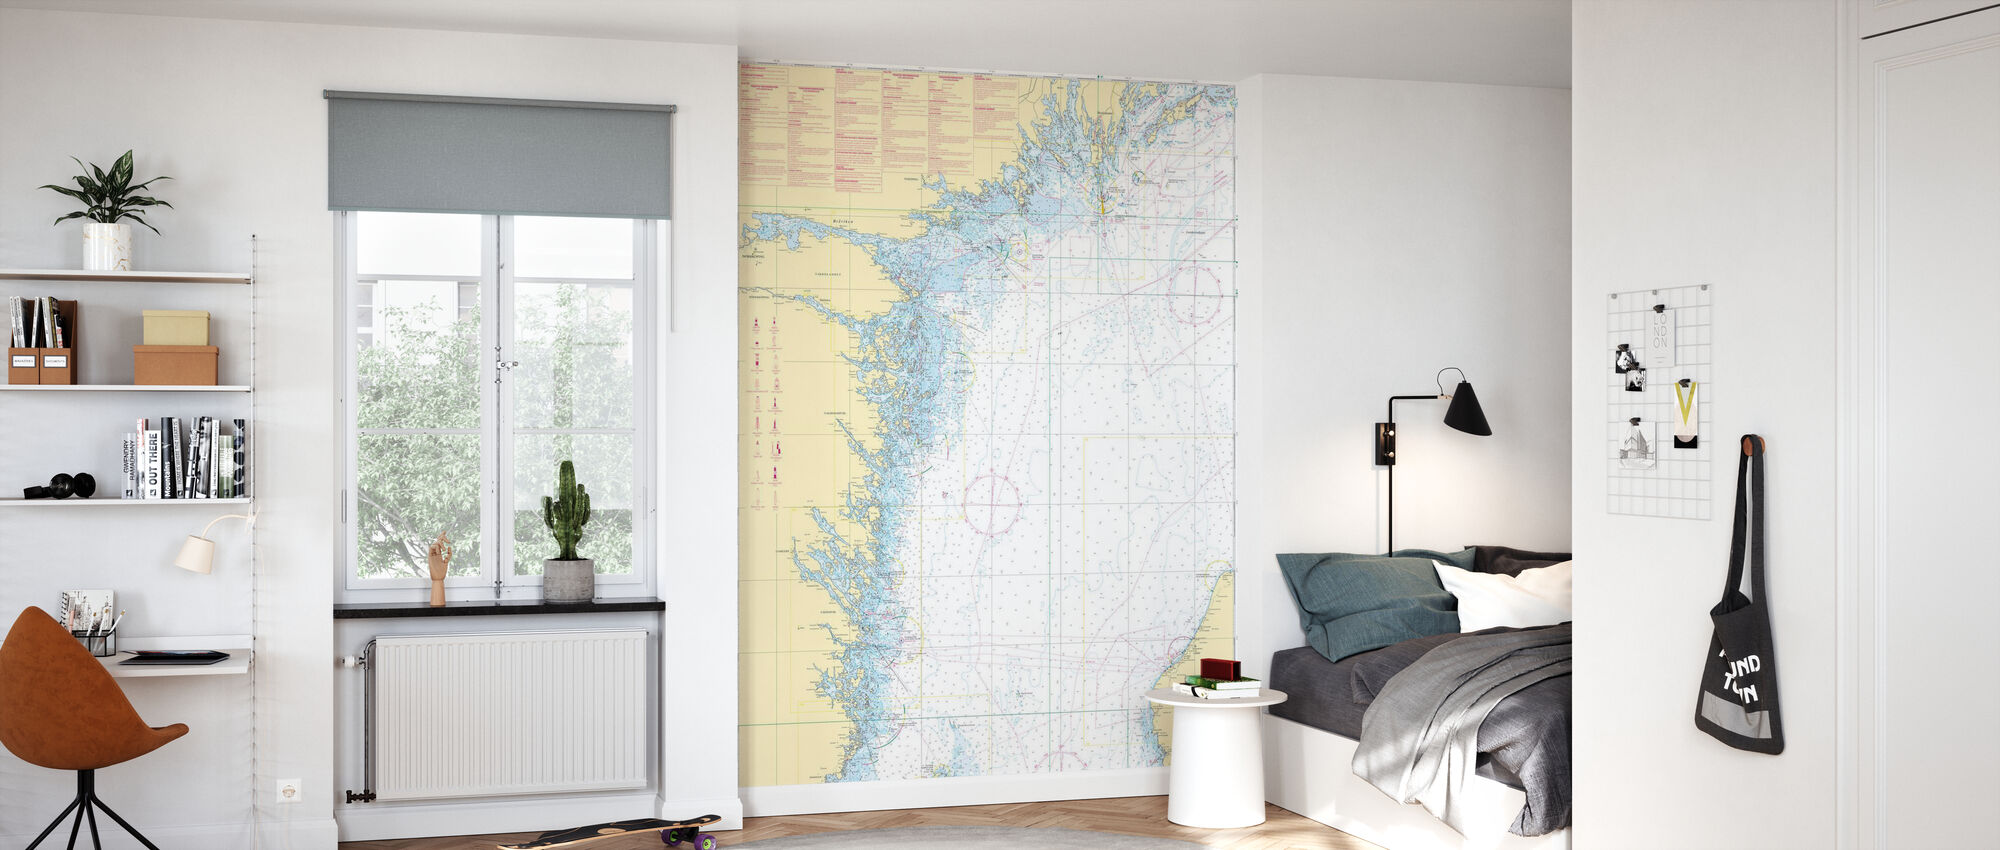 Landsort Sweden Wallpapers